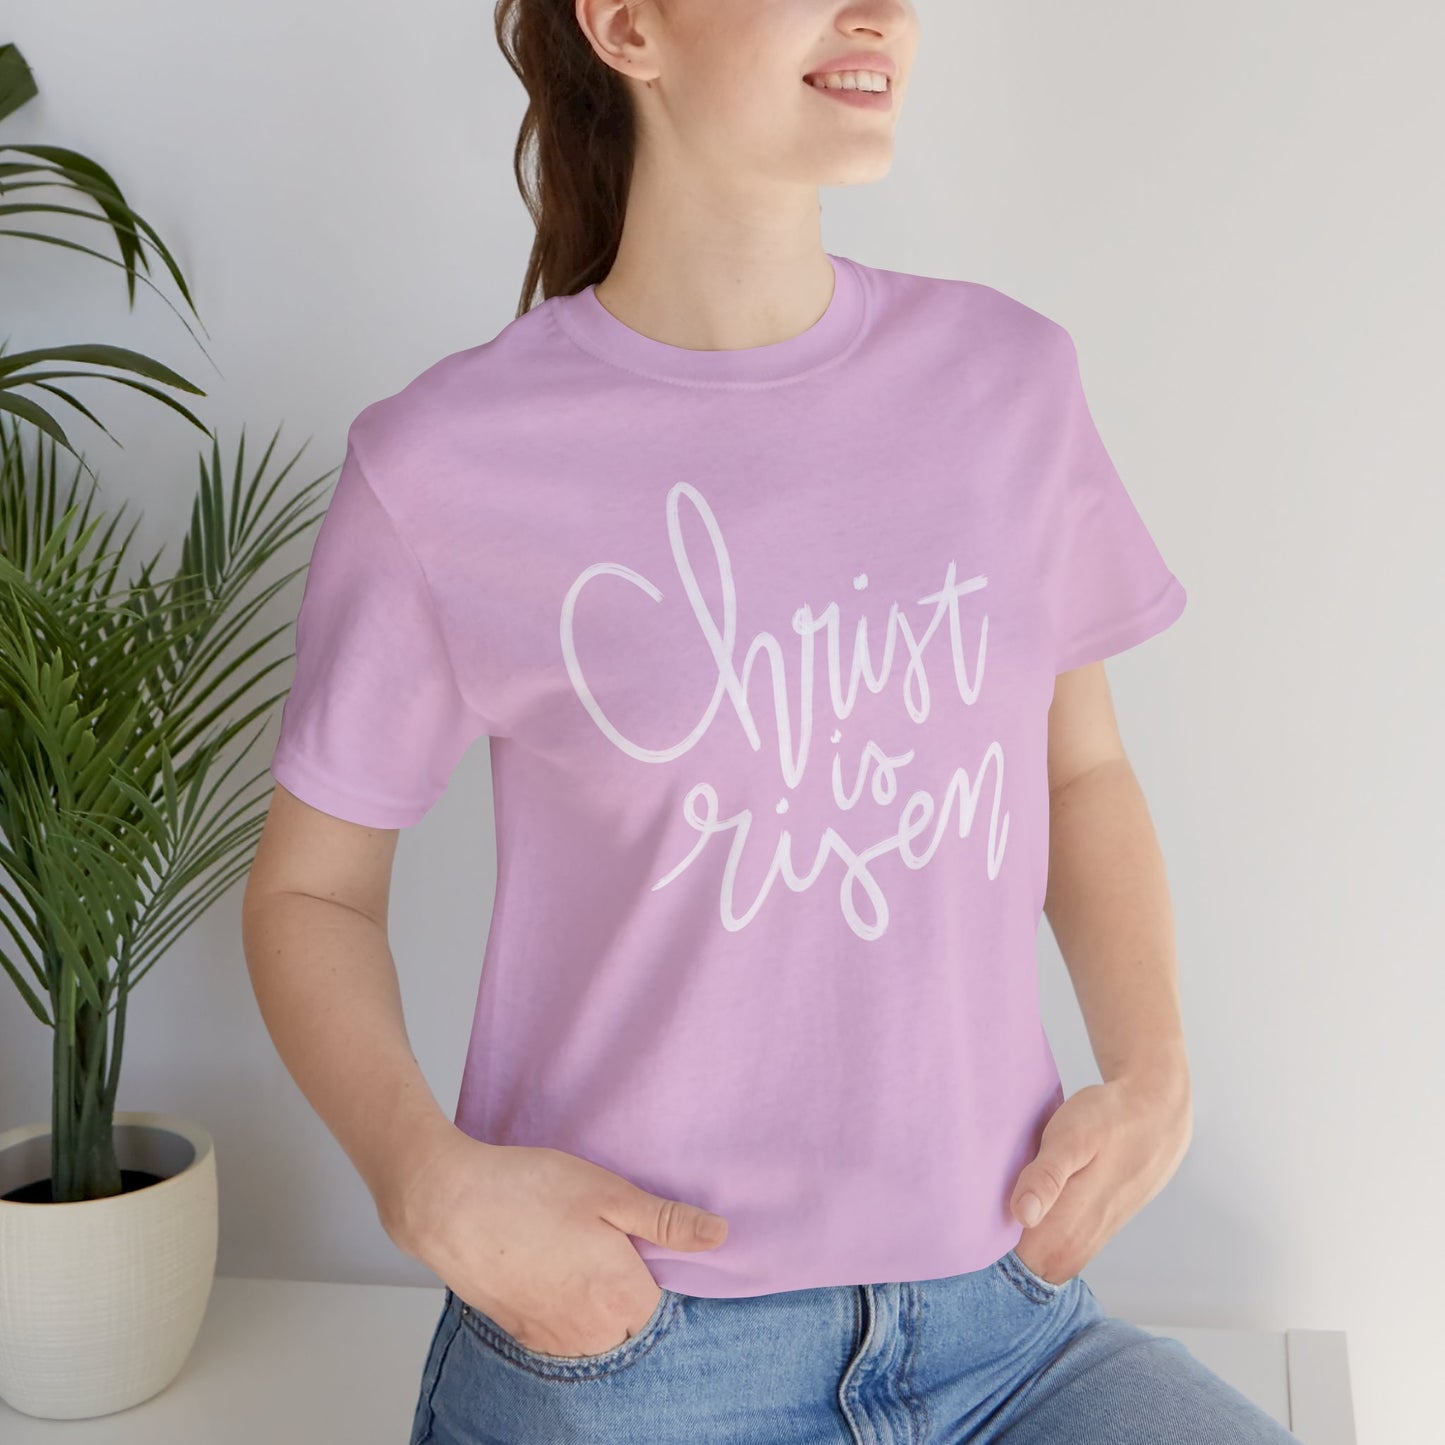 Christ is Risen T-shirt